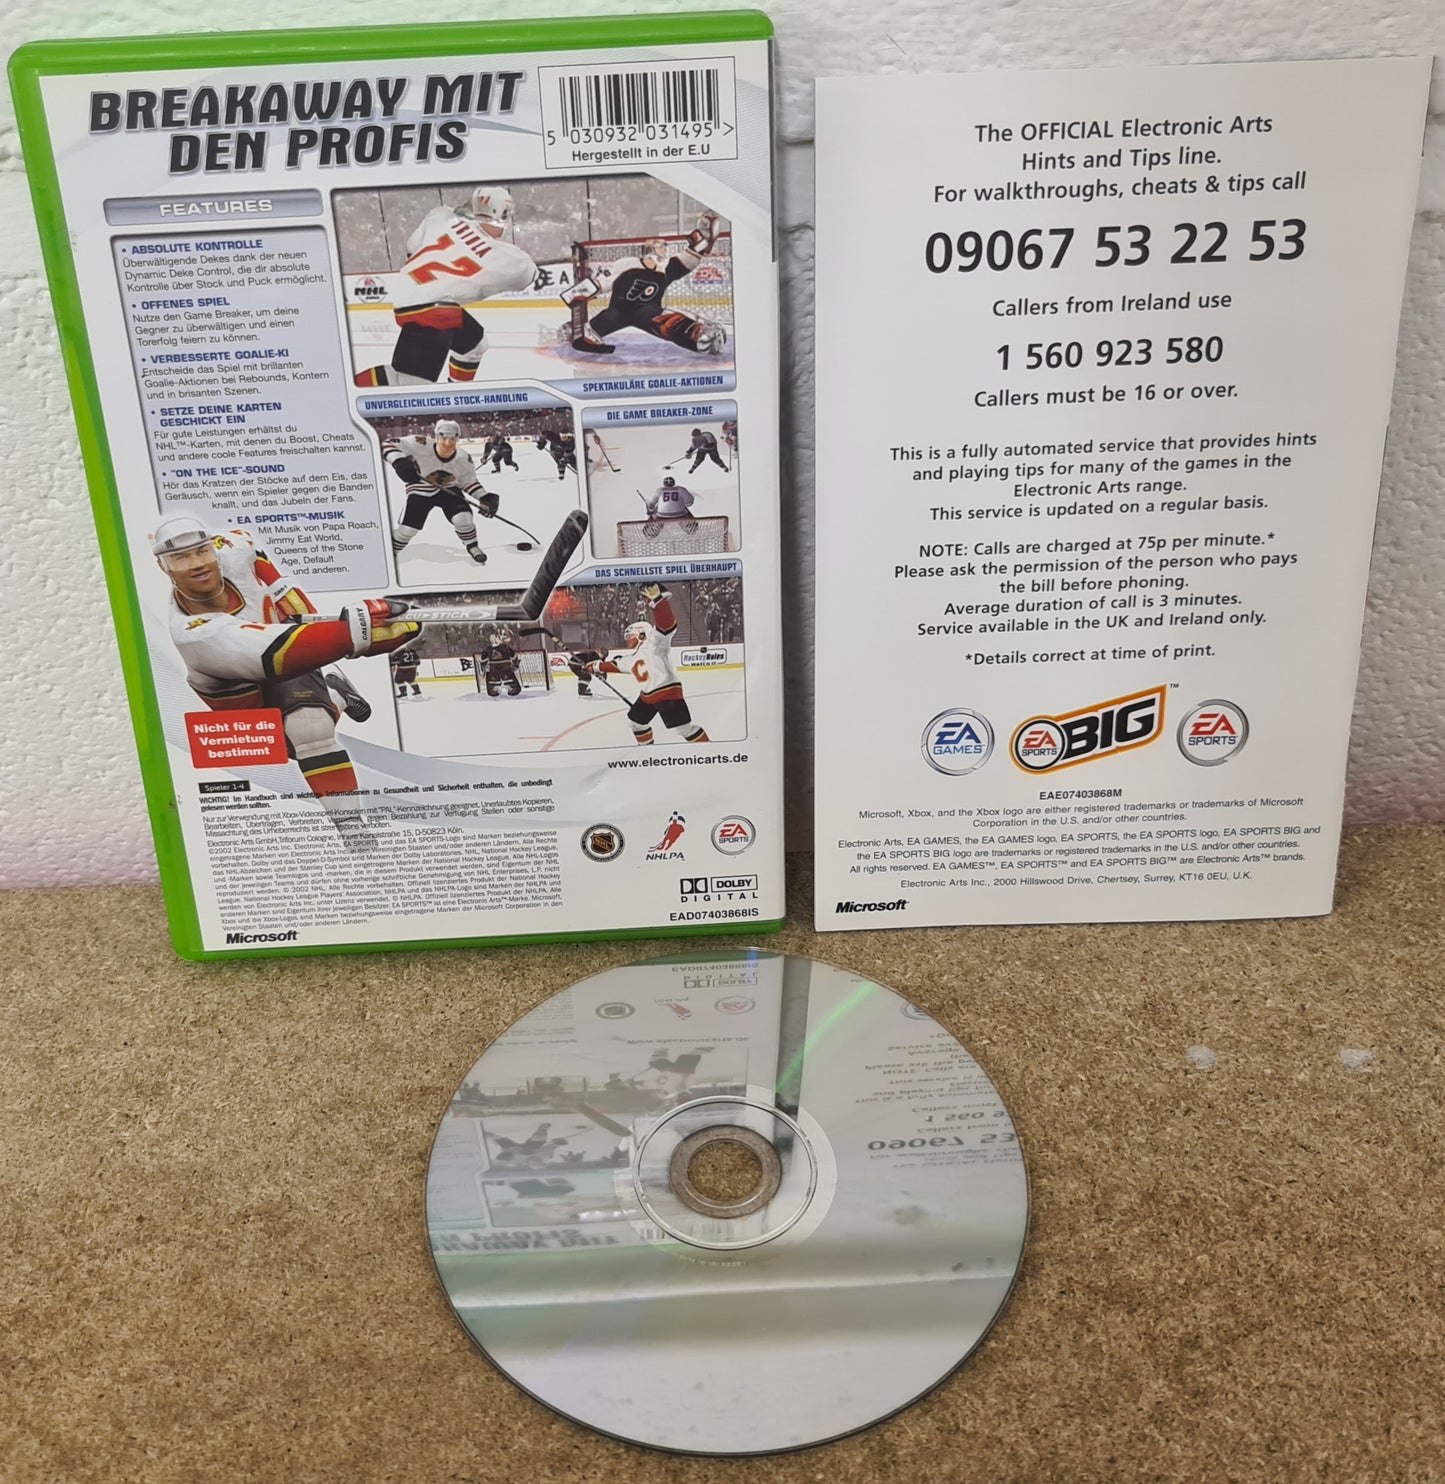 NHL 2003 Microsoft Xbox Game